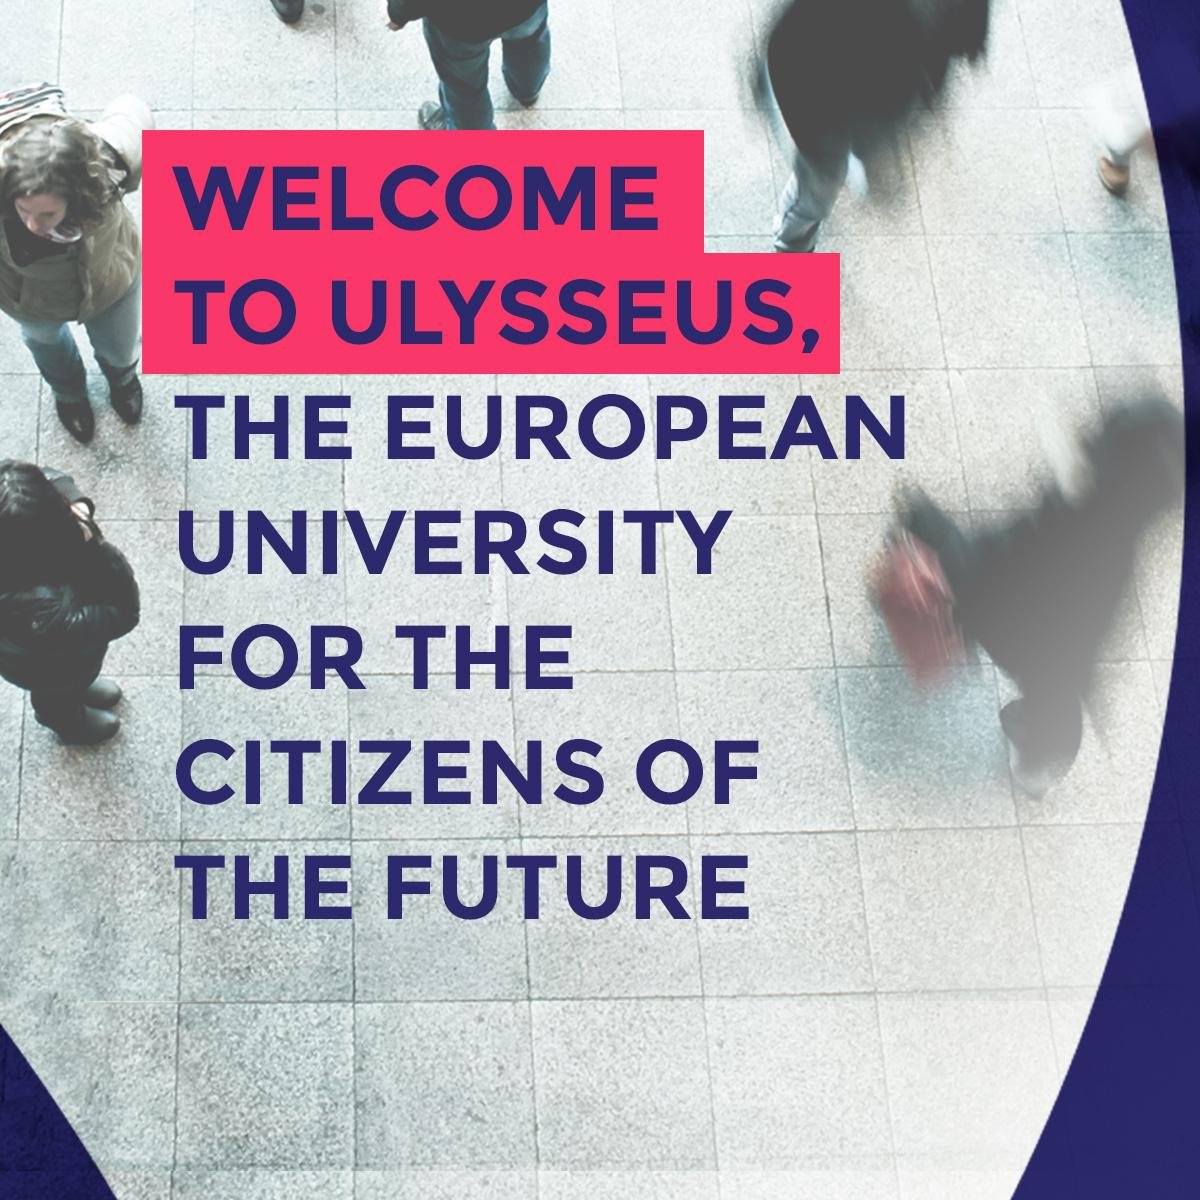 Ulysseus, un nuevo horizonte para la educación universitaria liderado desde Sevilla